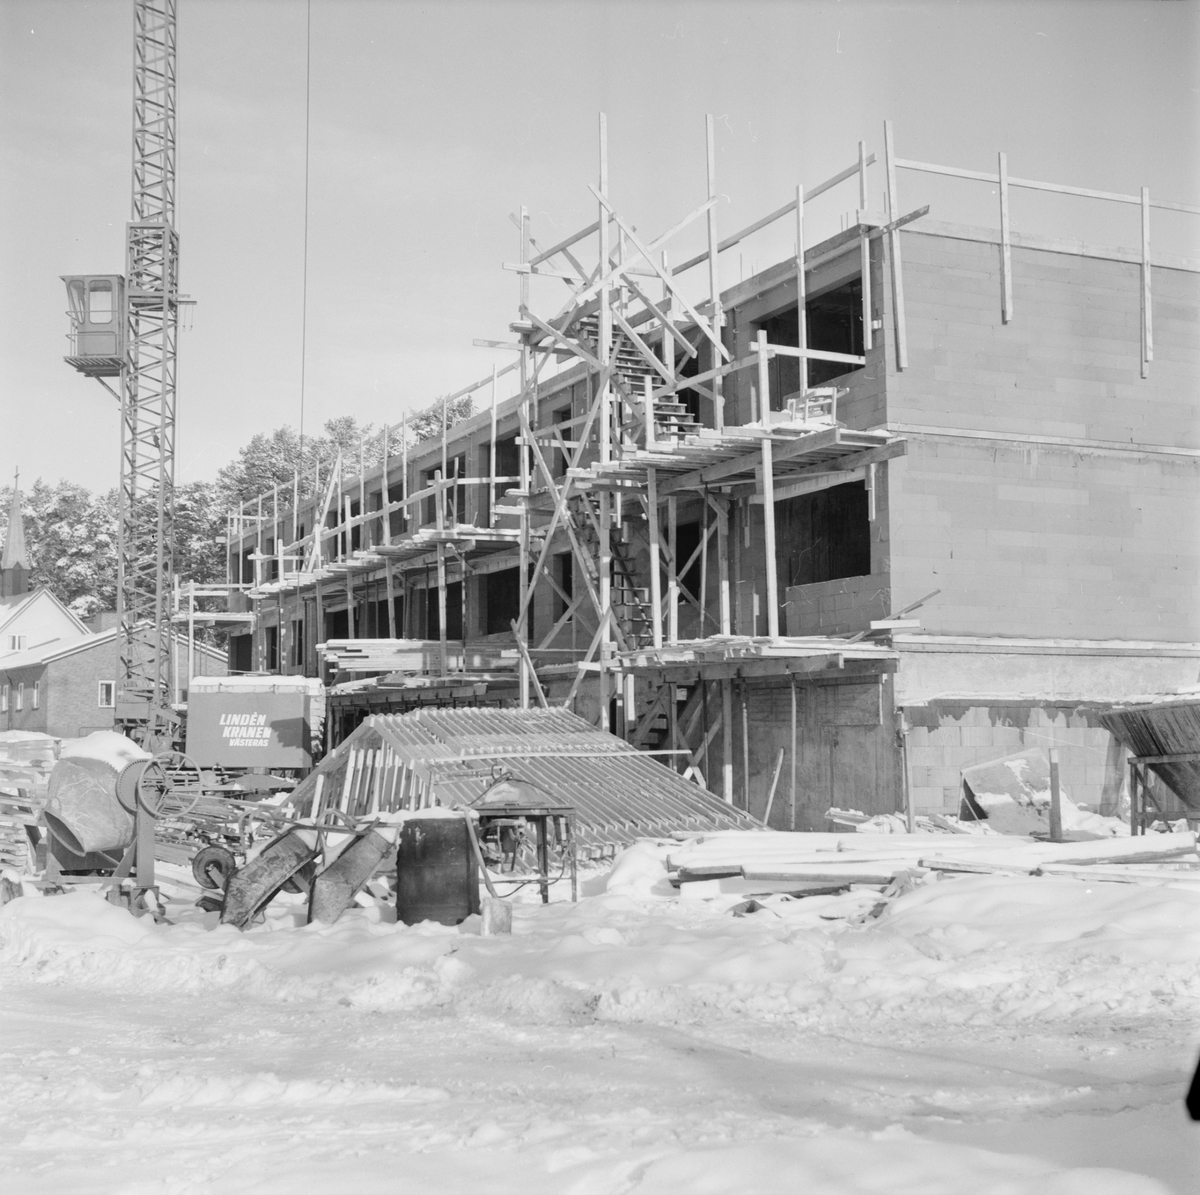 Milda vintern uppskattad av byggfolket i Månkarbo, Uppland, februari 1972